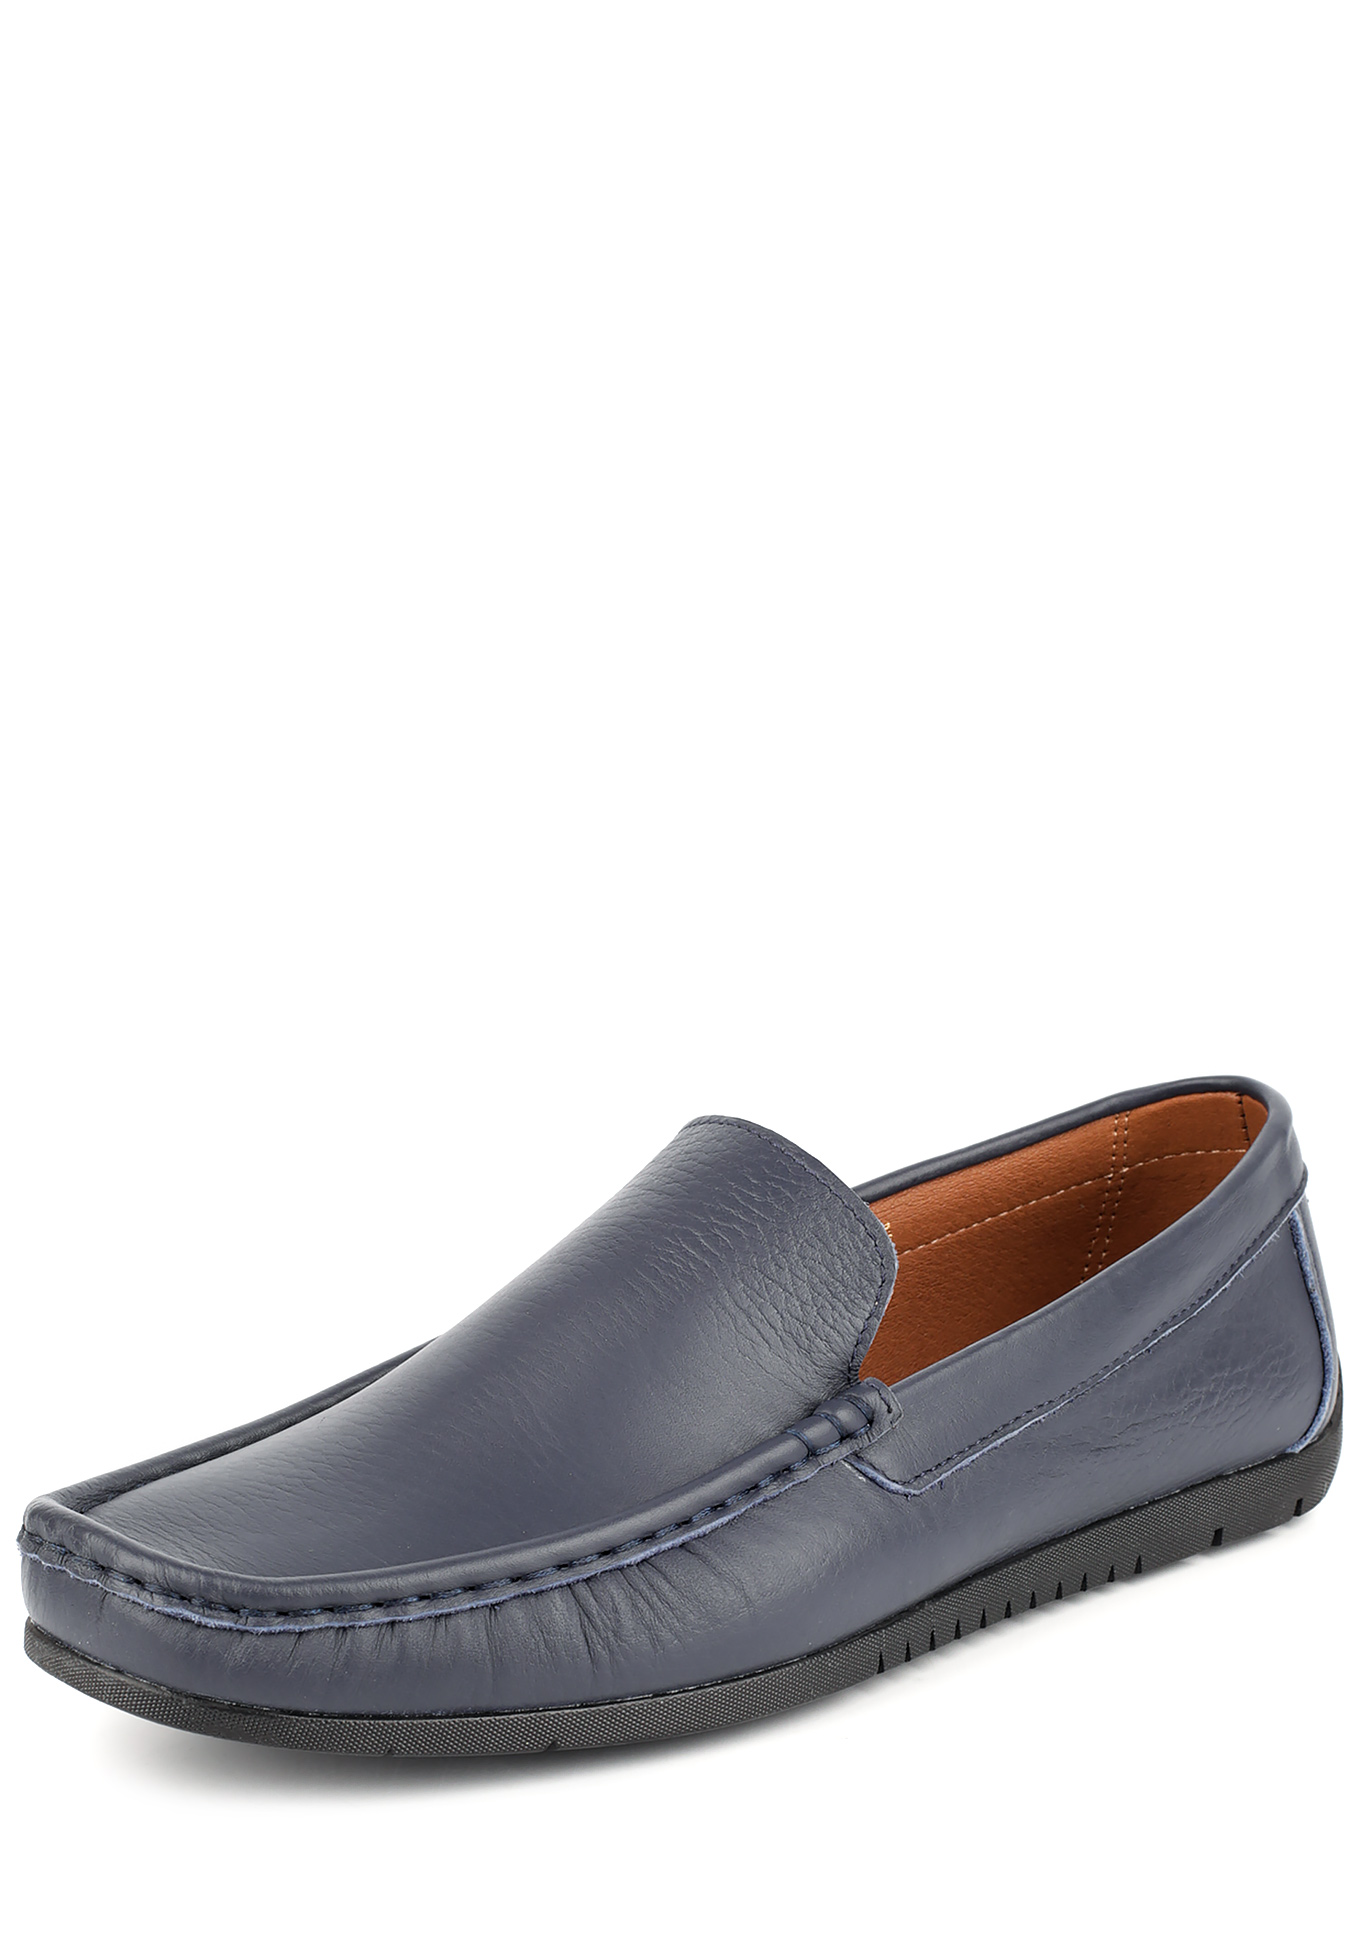 Туфли «Бенджи», мужские Valser, размер 39, цвет синий